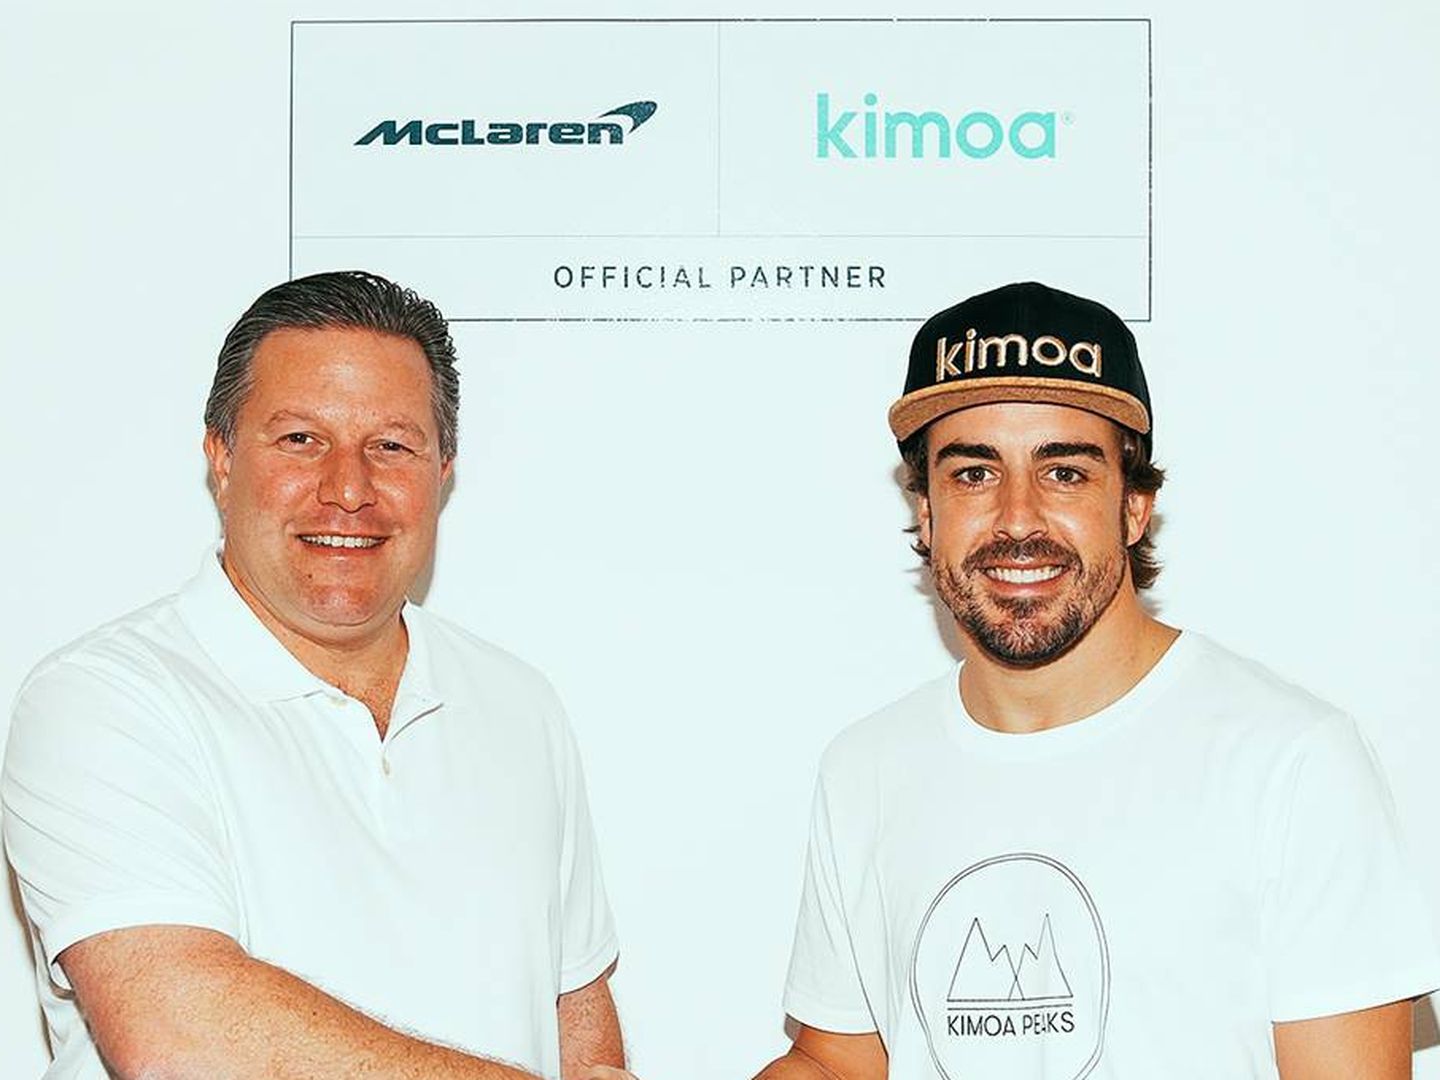 Fernando ha invertido mucho en su marca, incluso un acuerdo de patrocinio en McLaren